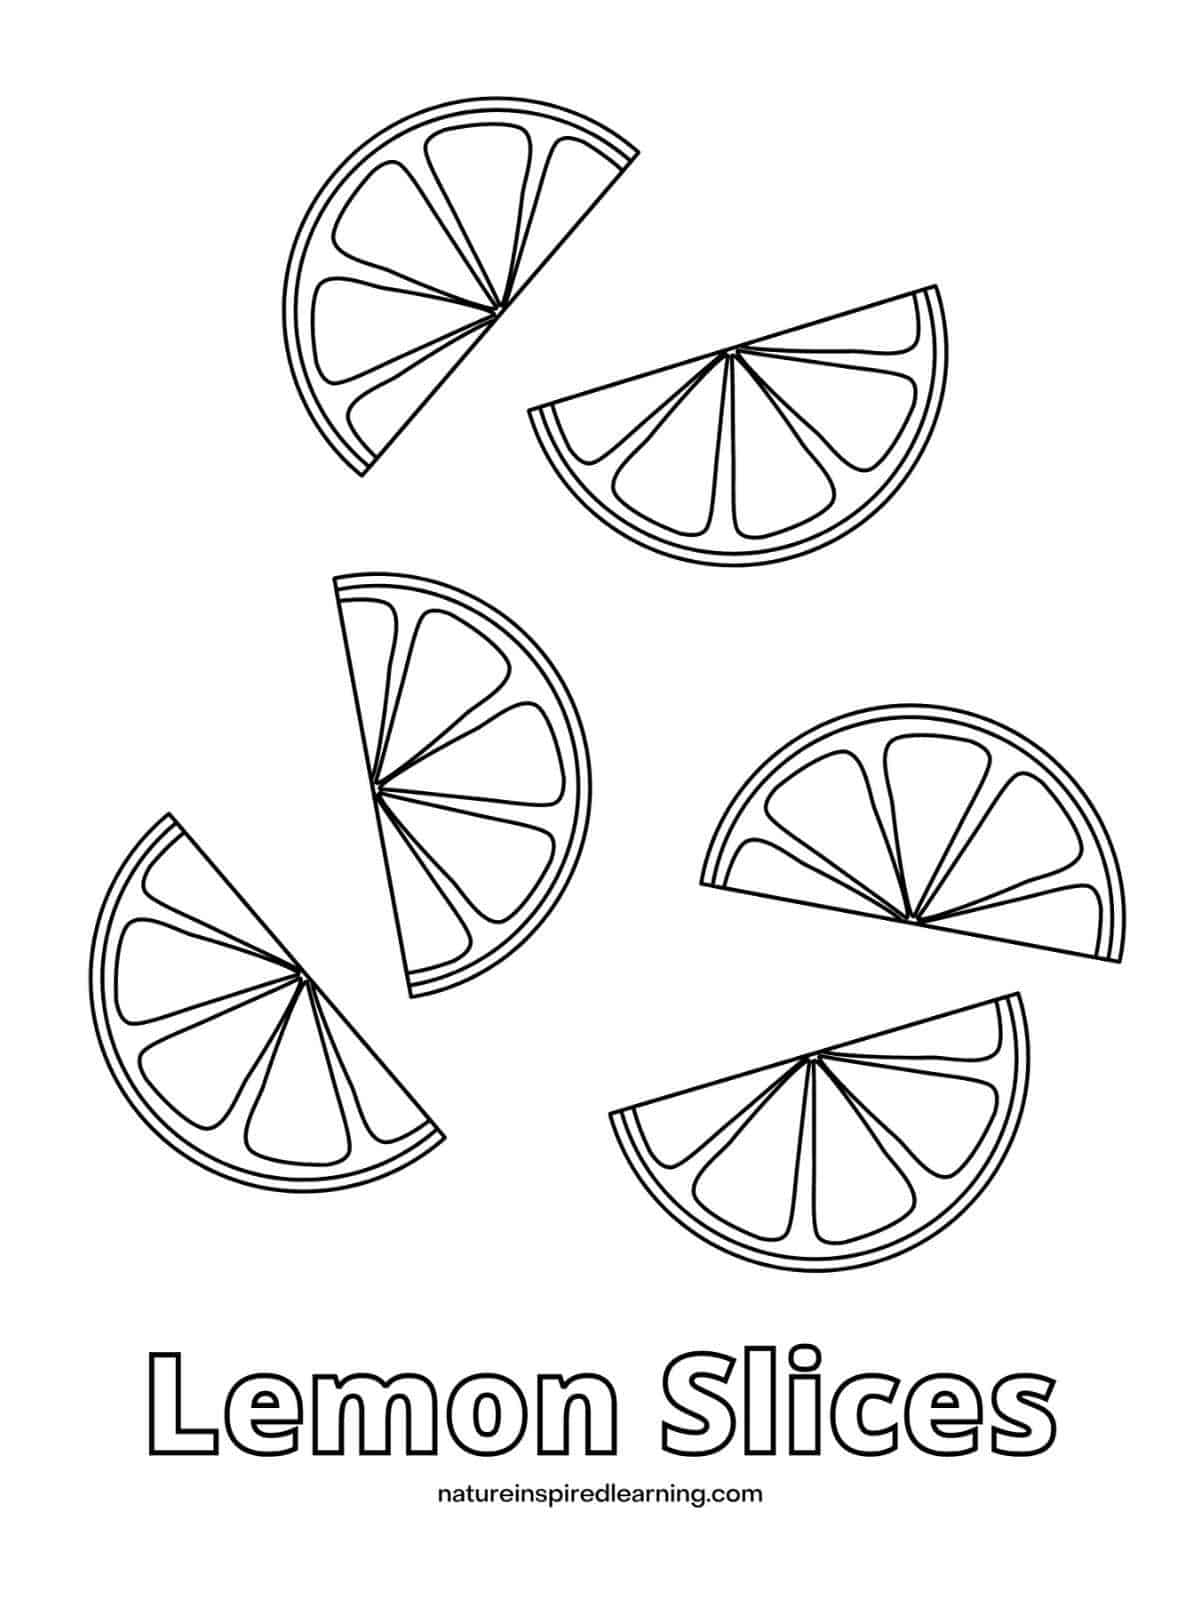 printable with 6 lemon slices arranged randomly and Lemon Slices written across bottom